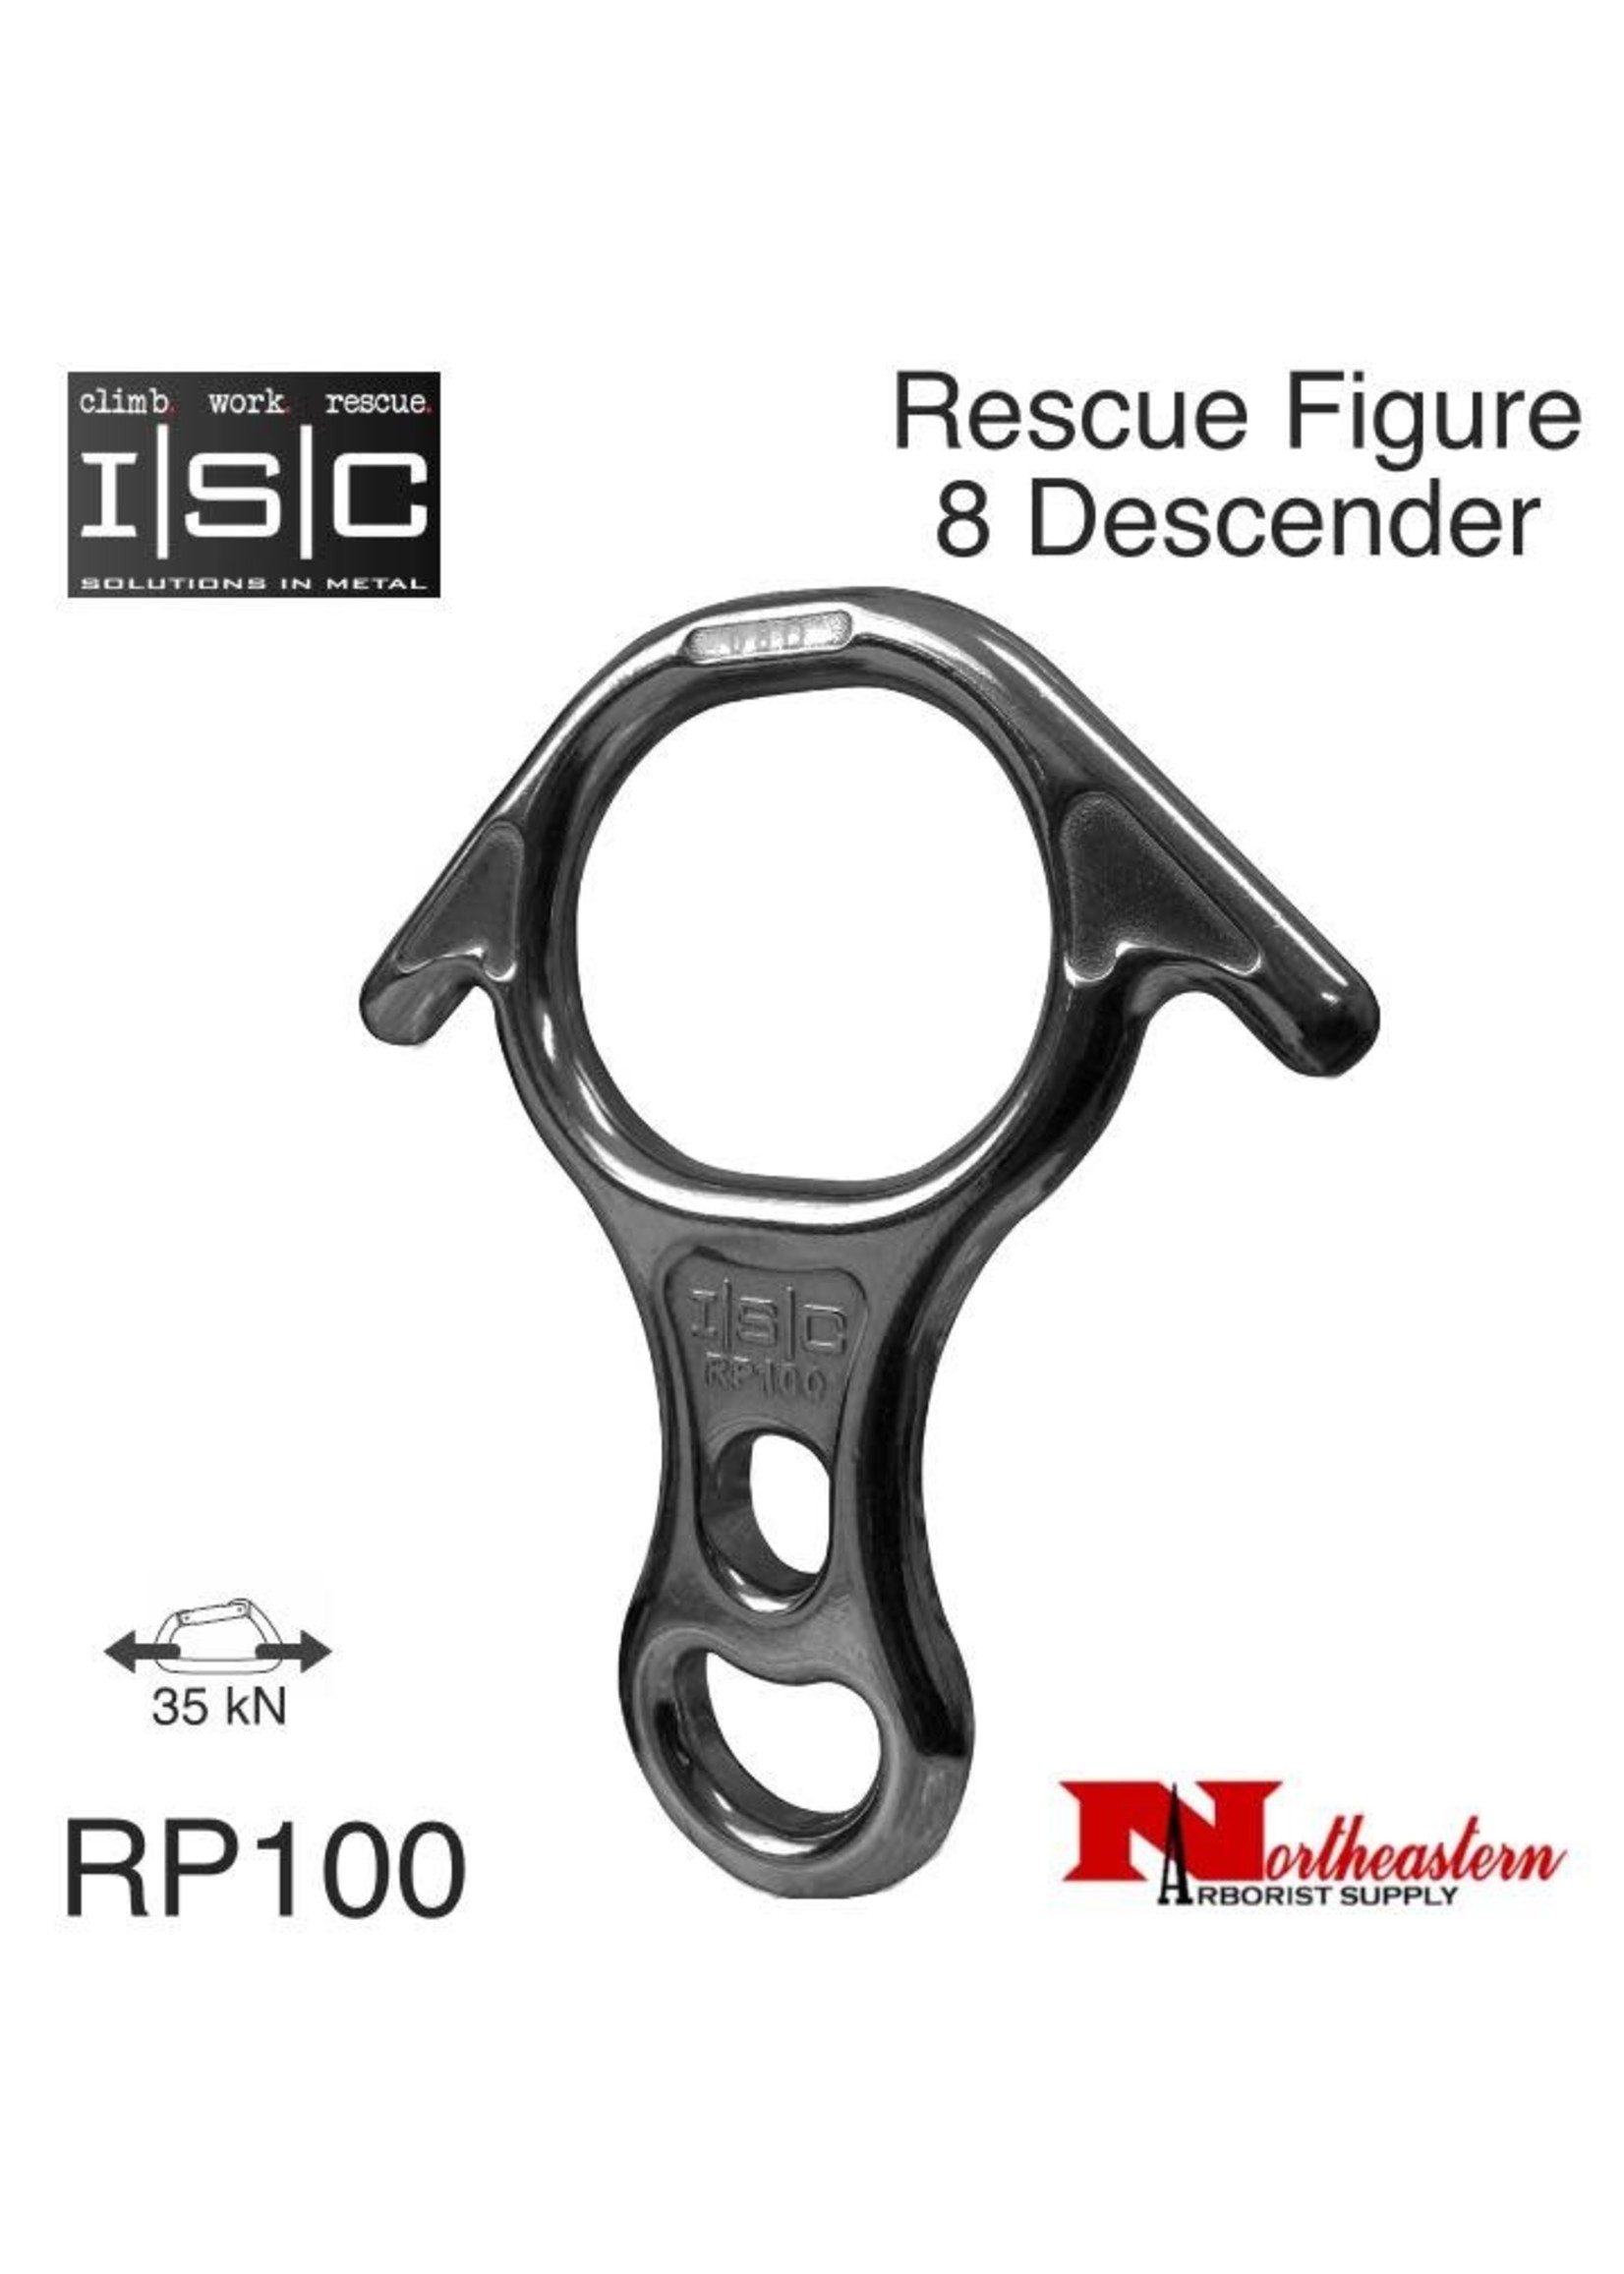 ISC Descender Rescue Figure 8, Aluminium, 35kN MBS